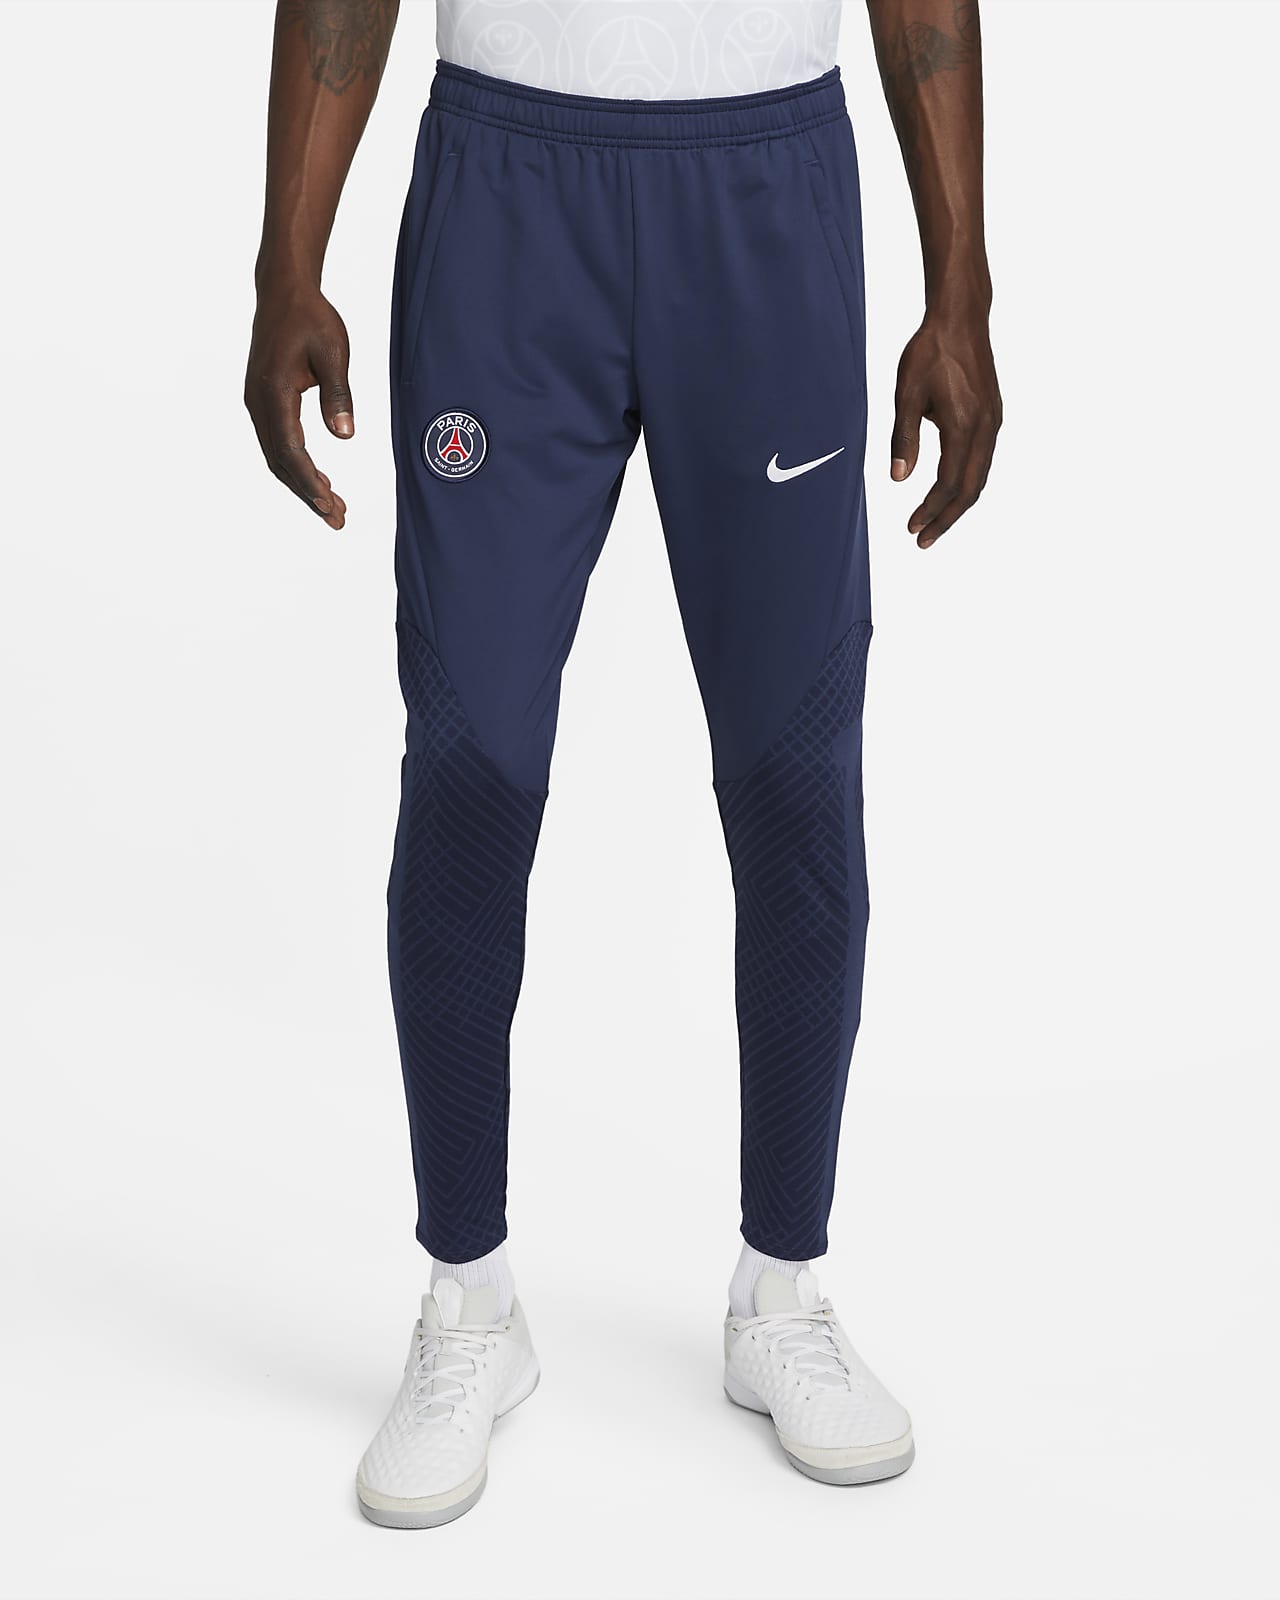 Grave solitario proyector París Saint-Germain Strike Pantalón de fútbol Nike Dri-FIT - Hombre. Nike ES